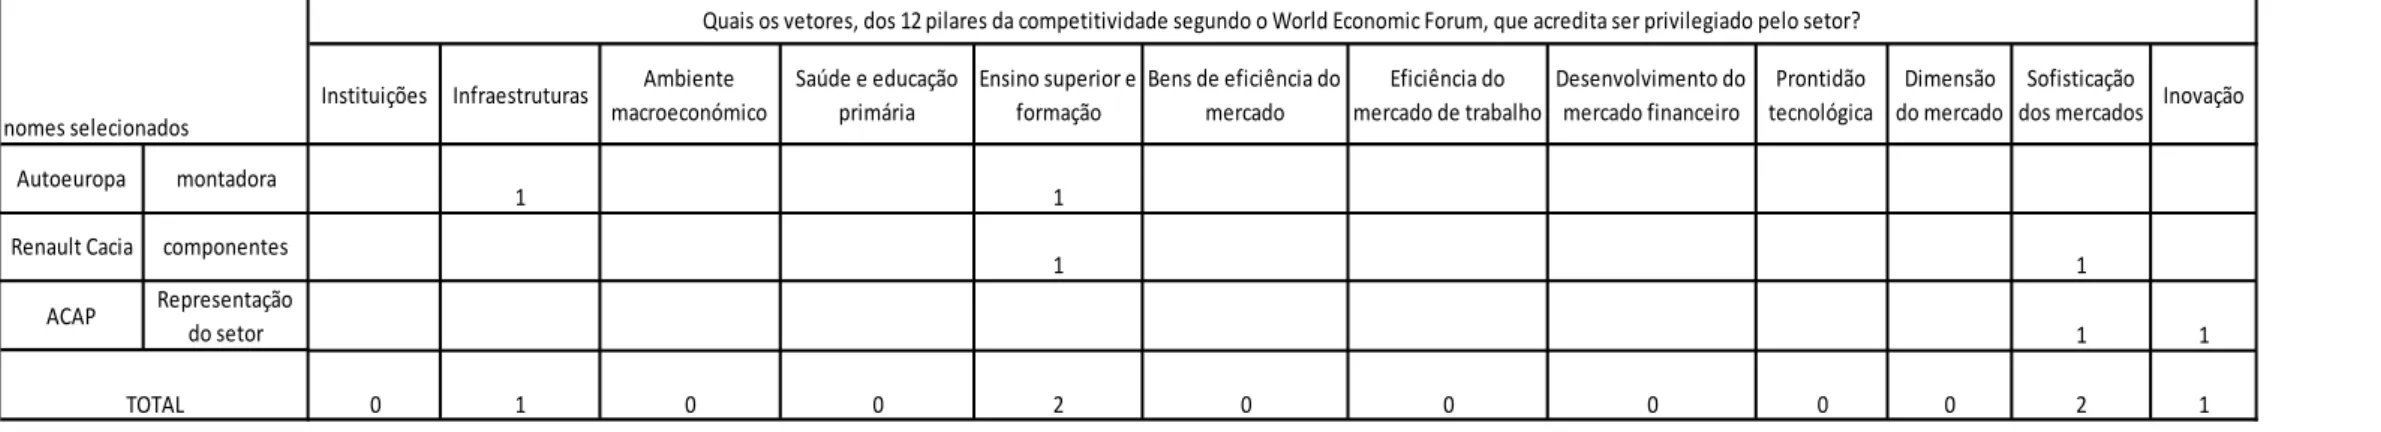 Tabela 10. Quais os fatores que considera alavancar ou obstaculizar a competitividade no conexto português e face à escala global dos mercados?  